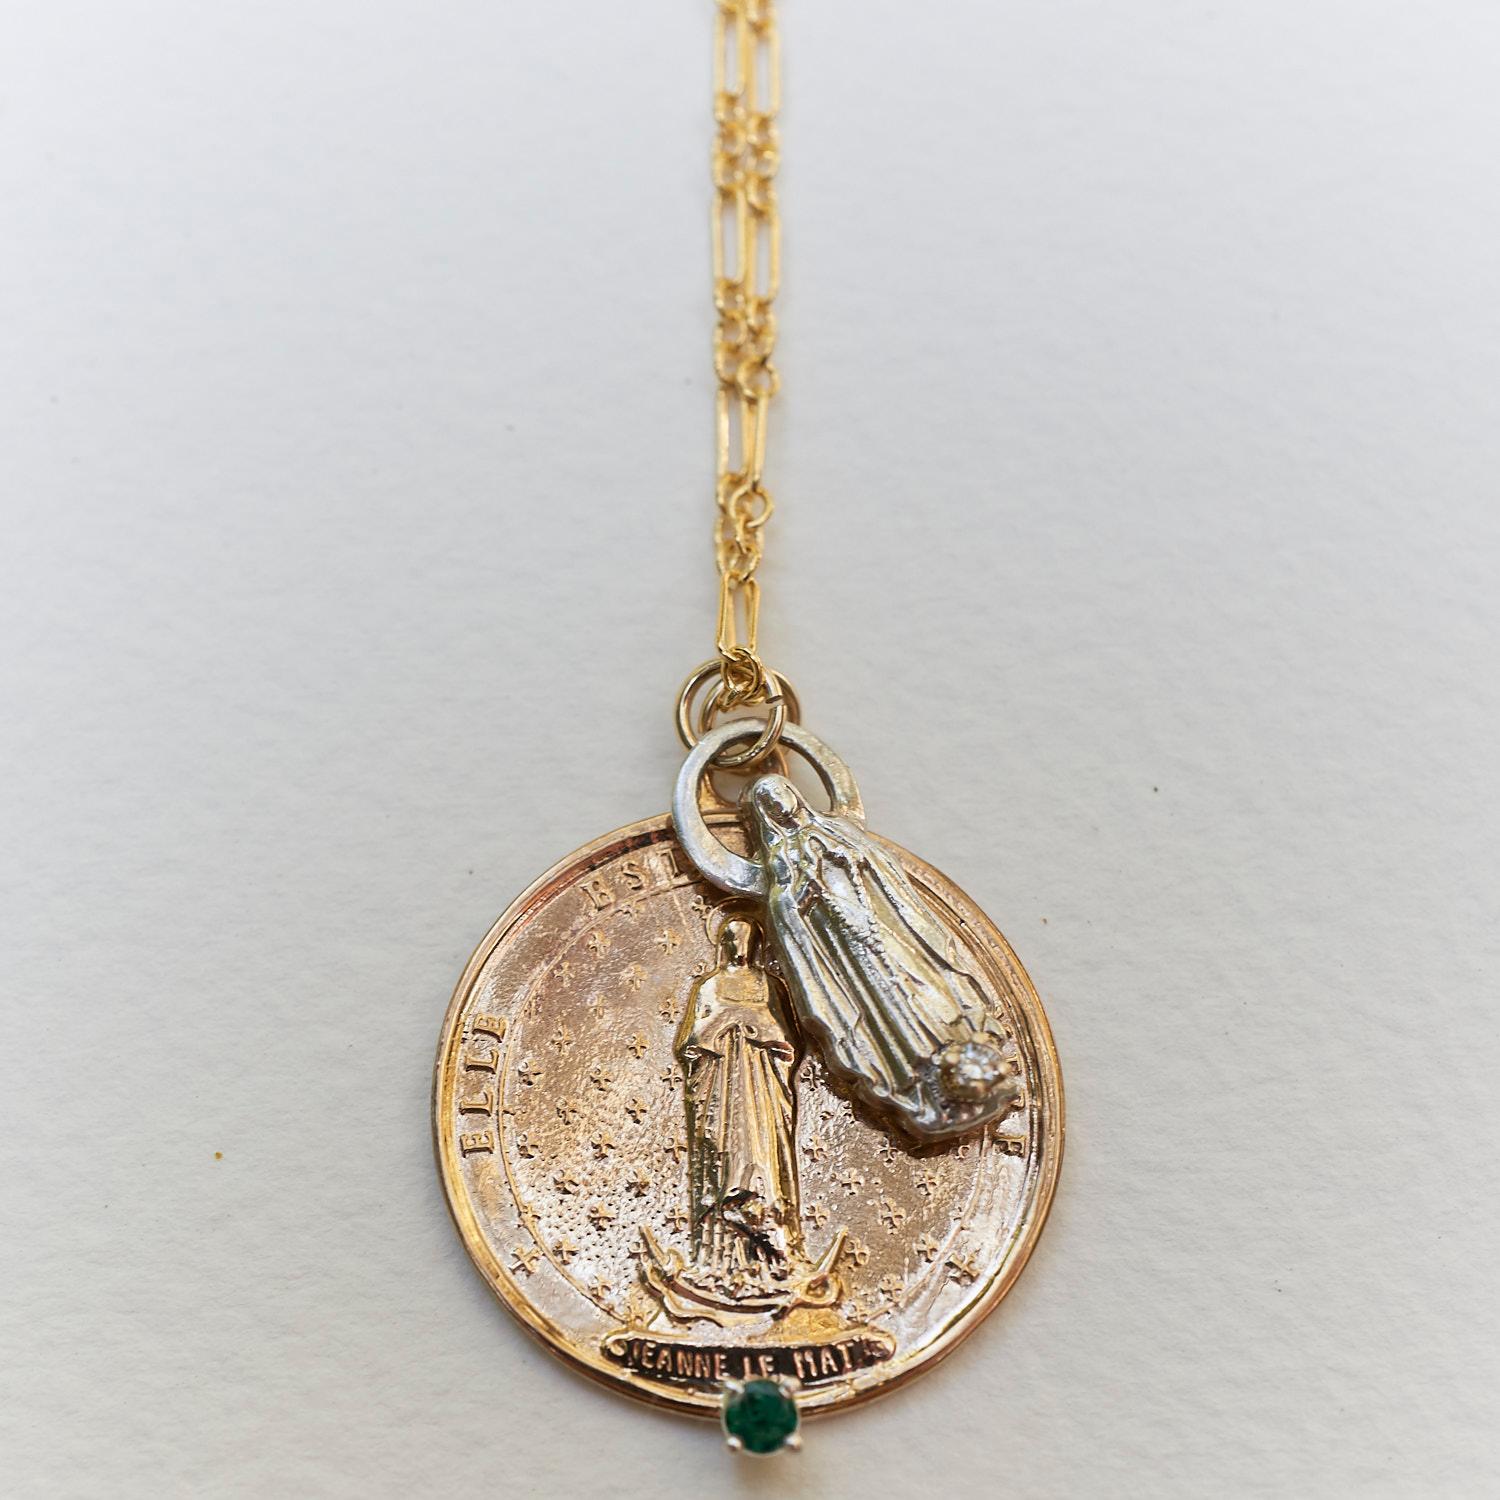 Sautoir de 24 pouces avec deux médailles en argent et en bronze sur le thème de la Vierge Marie, l'une avec une émeraude et l'autre avec un diamant blanc.

Pendentif médaille spirituelle française avec Jeanne Le Mat en bronze orné d'une émeraude